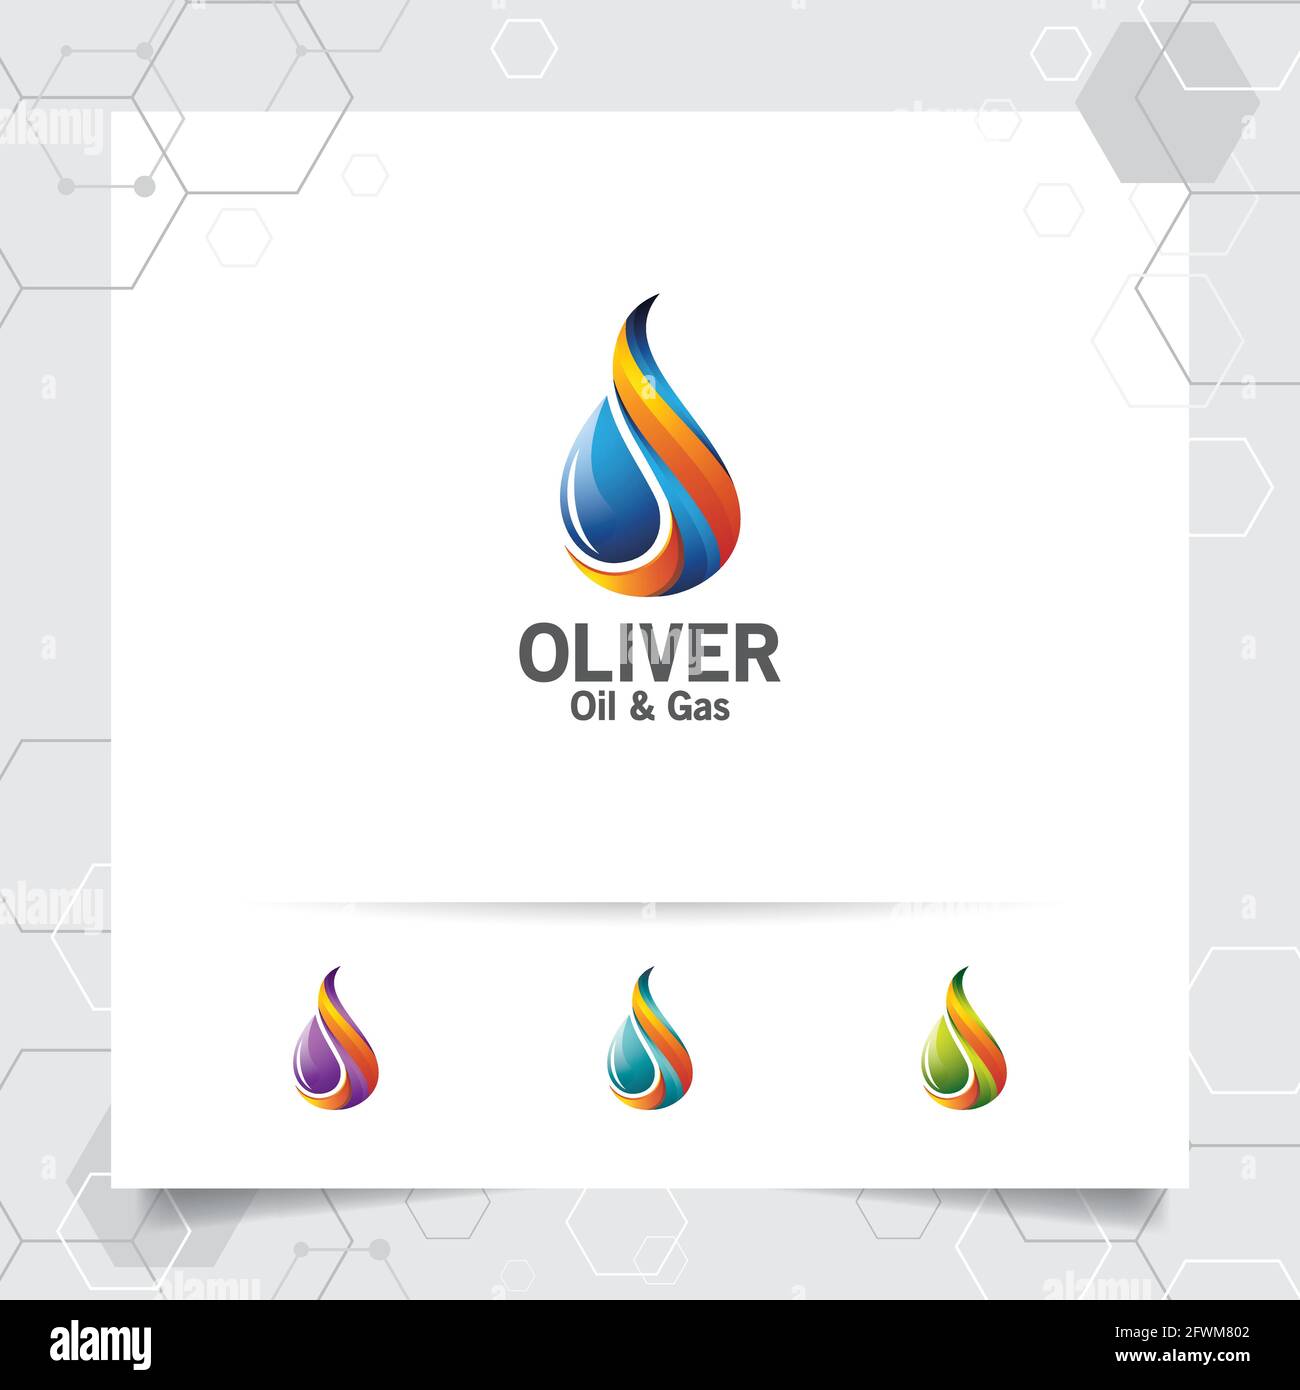 Designvektor für das Logo von Ölgas mit dem Konzept der Feuerbrandbildung und dem Symbol für Öltröpfchen für den Bergbau und die Kraftstoffverarbeitung. Stock Vektor